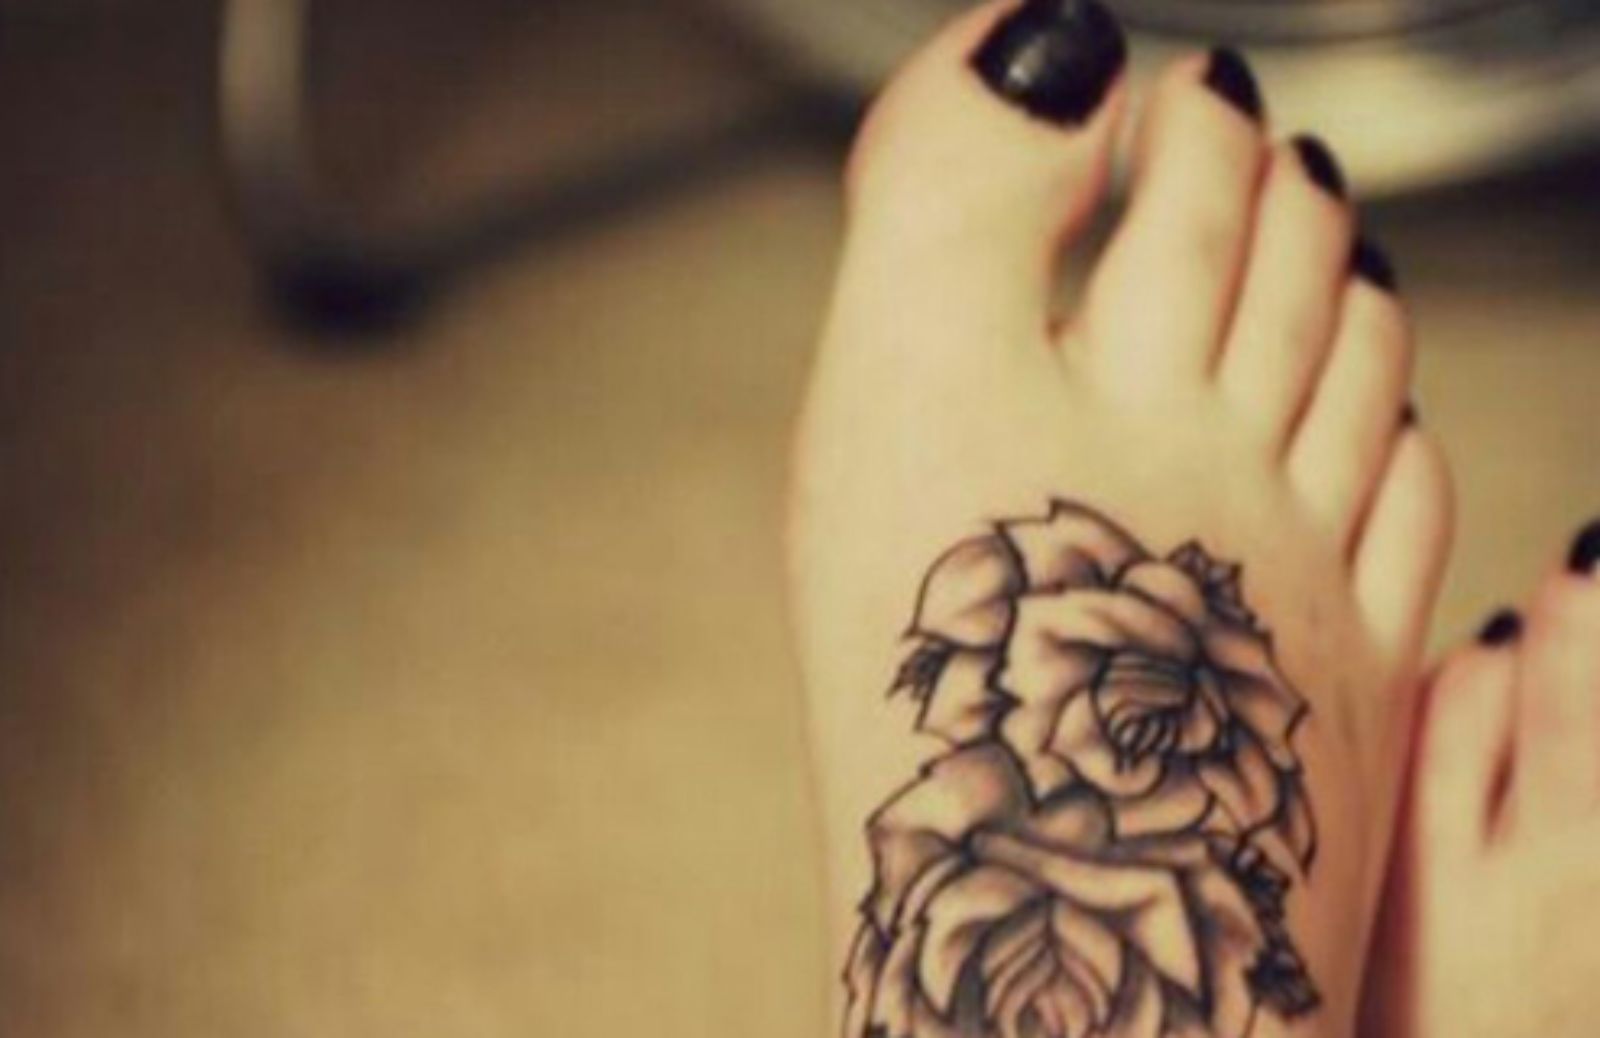 Tatuaggi sui piedi: 5 idee da copiare subito